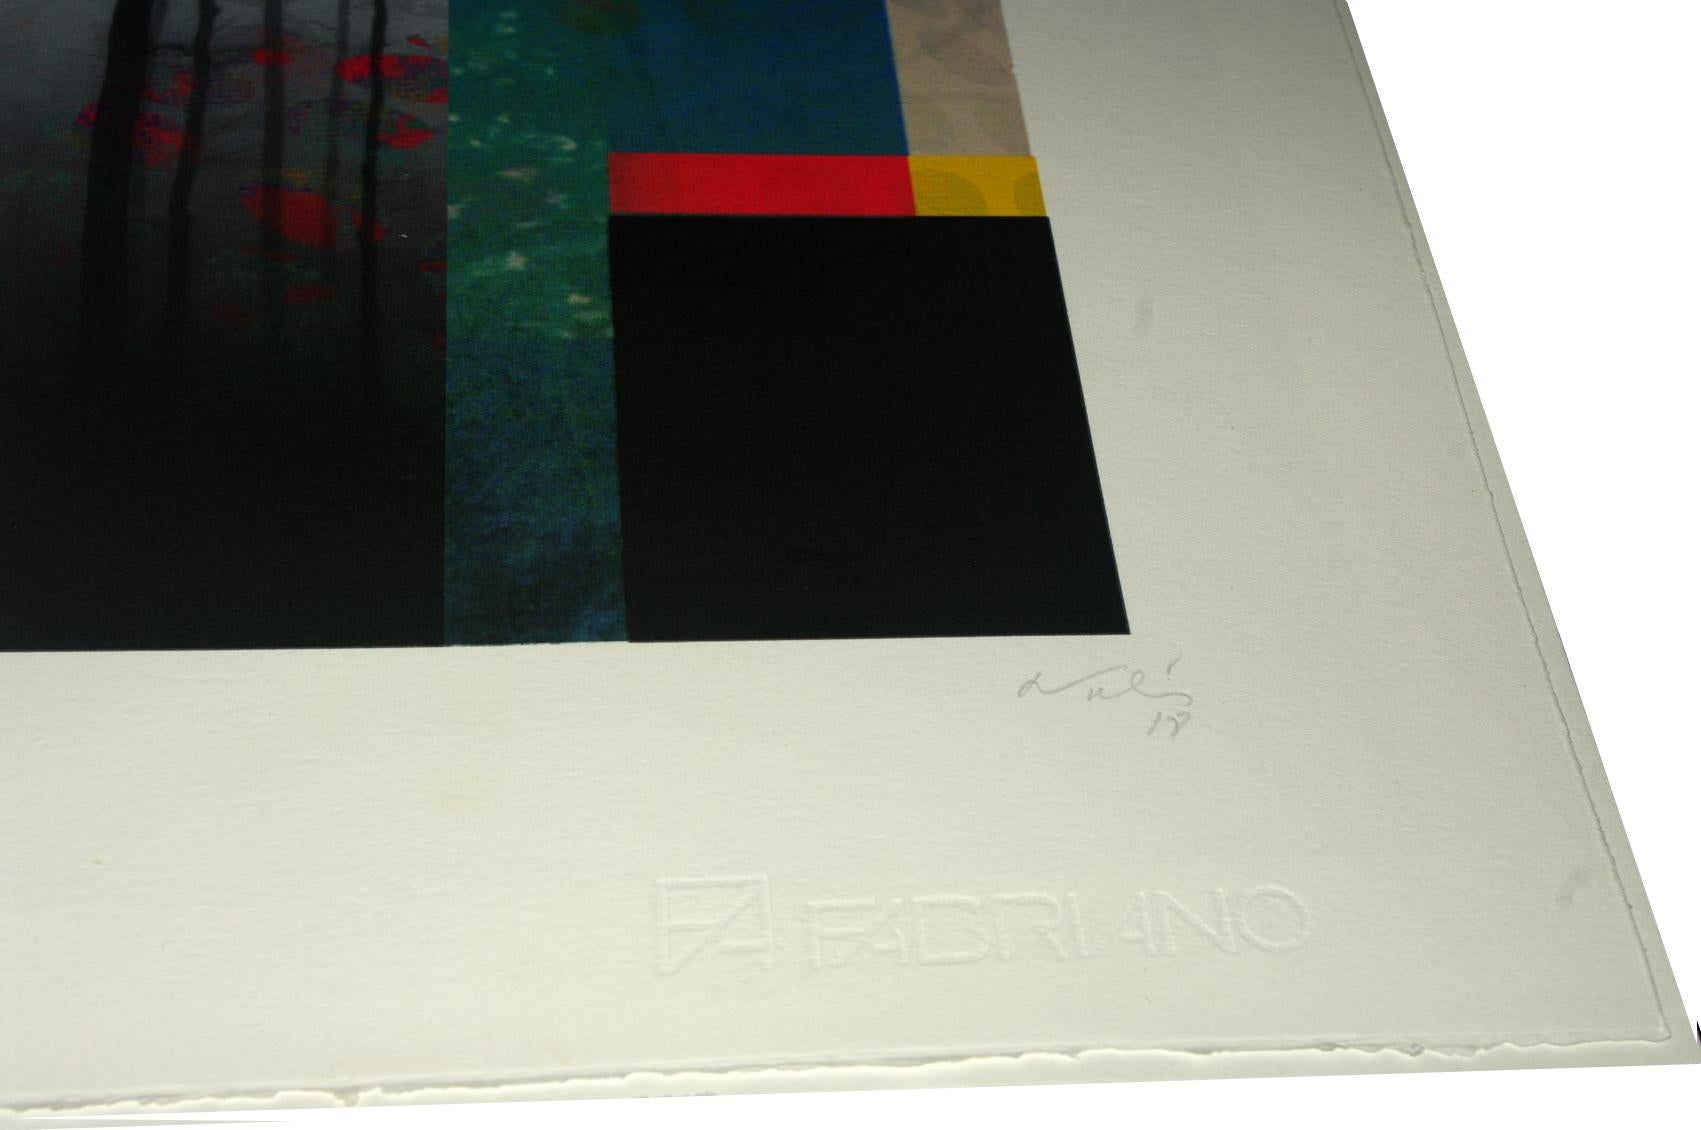 Zwei Lichter in den Bergen, 2018

Digitaler Pigmentdruck mit Ultrachrome-Tinte auf Fabriano Rosaspina-Papier. Vom Künstler handsigniert, mit Echtheitszertifikat. Auflage von 25 Stück  (Ungerahmt)

Seine Werke wurden im Reina Sofía Museum in Madrid,